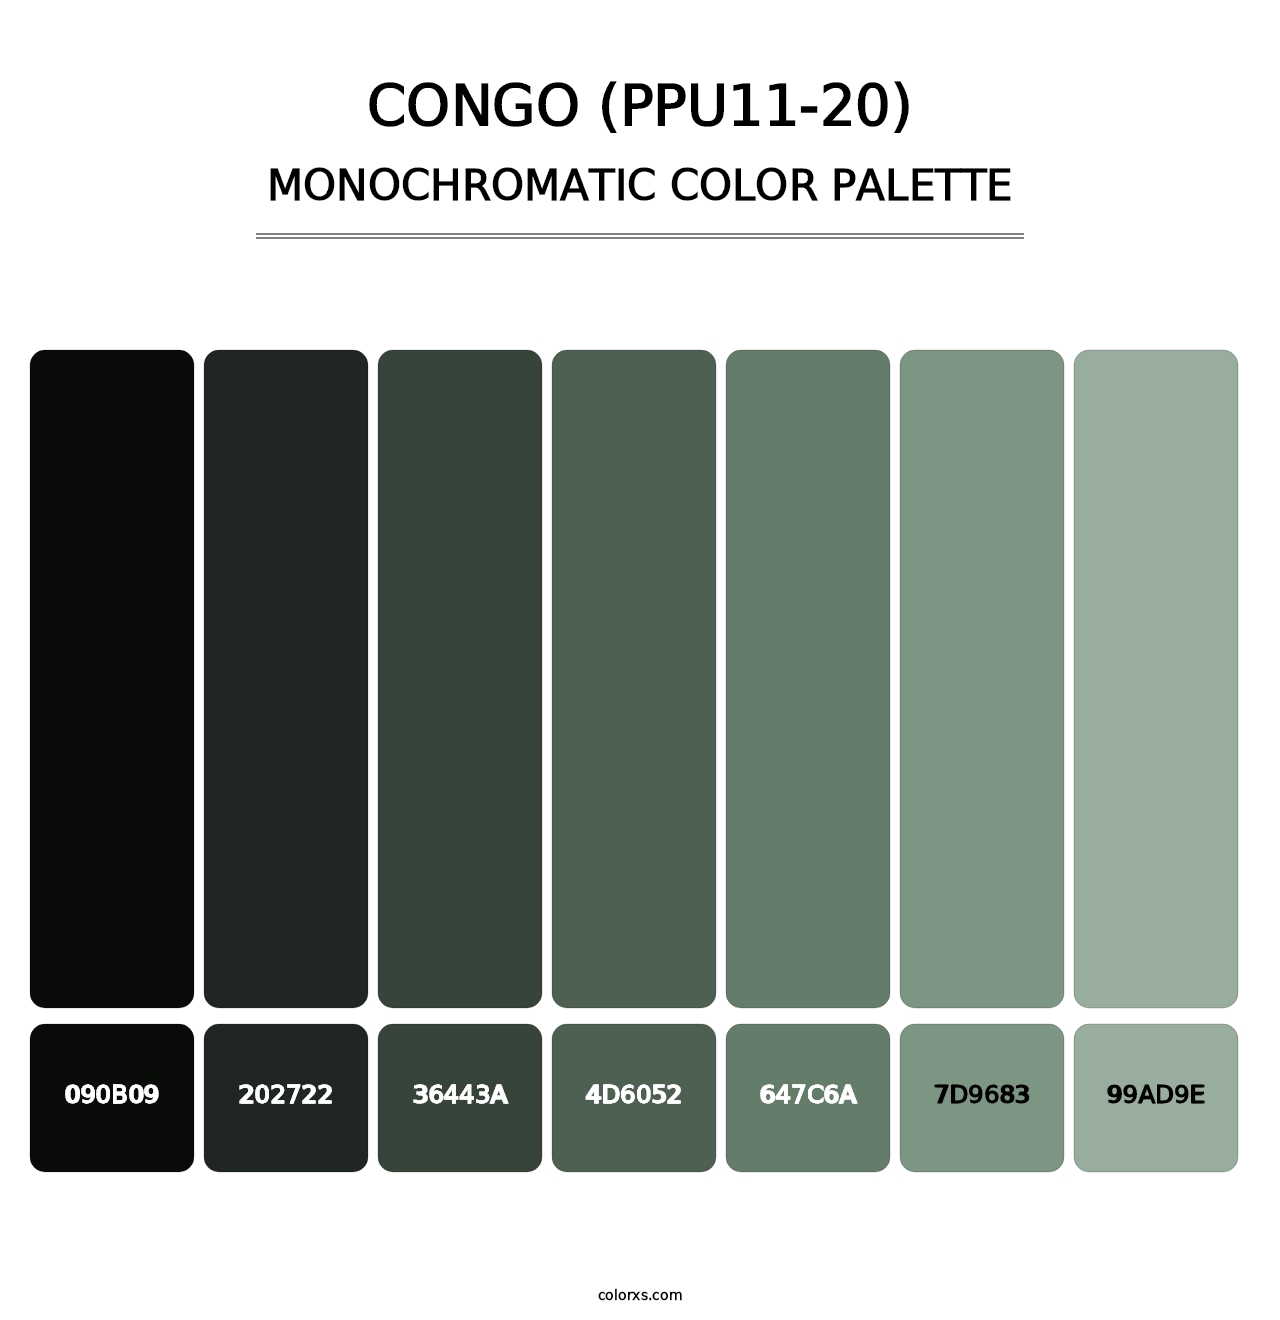 Congo (PPU11-20) - Monochromatic Color Palette